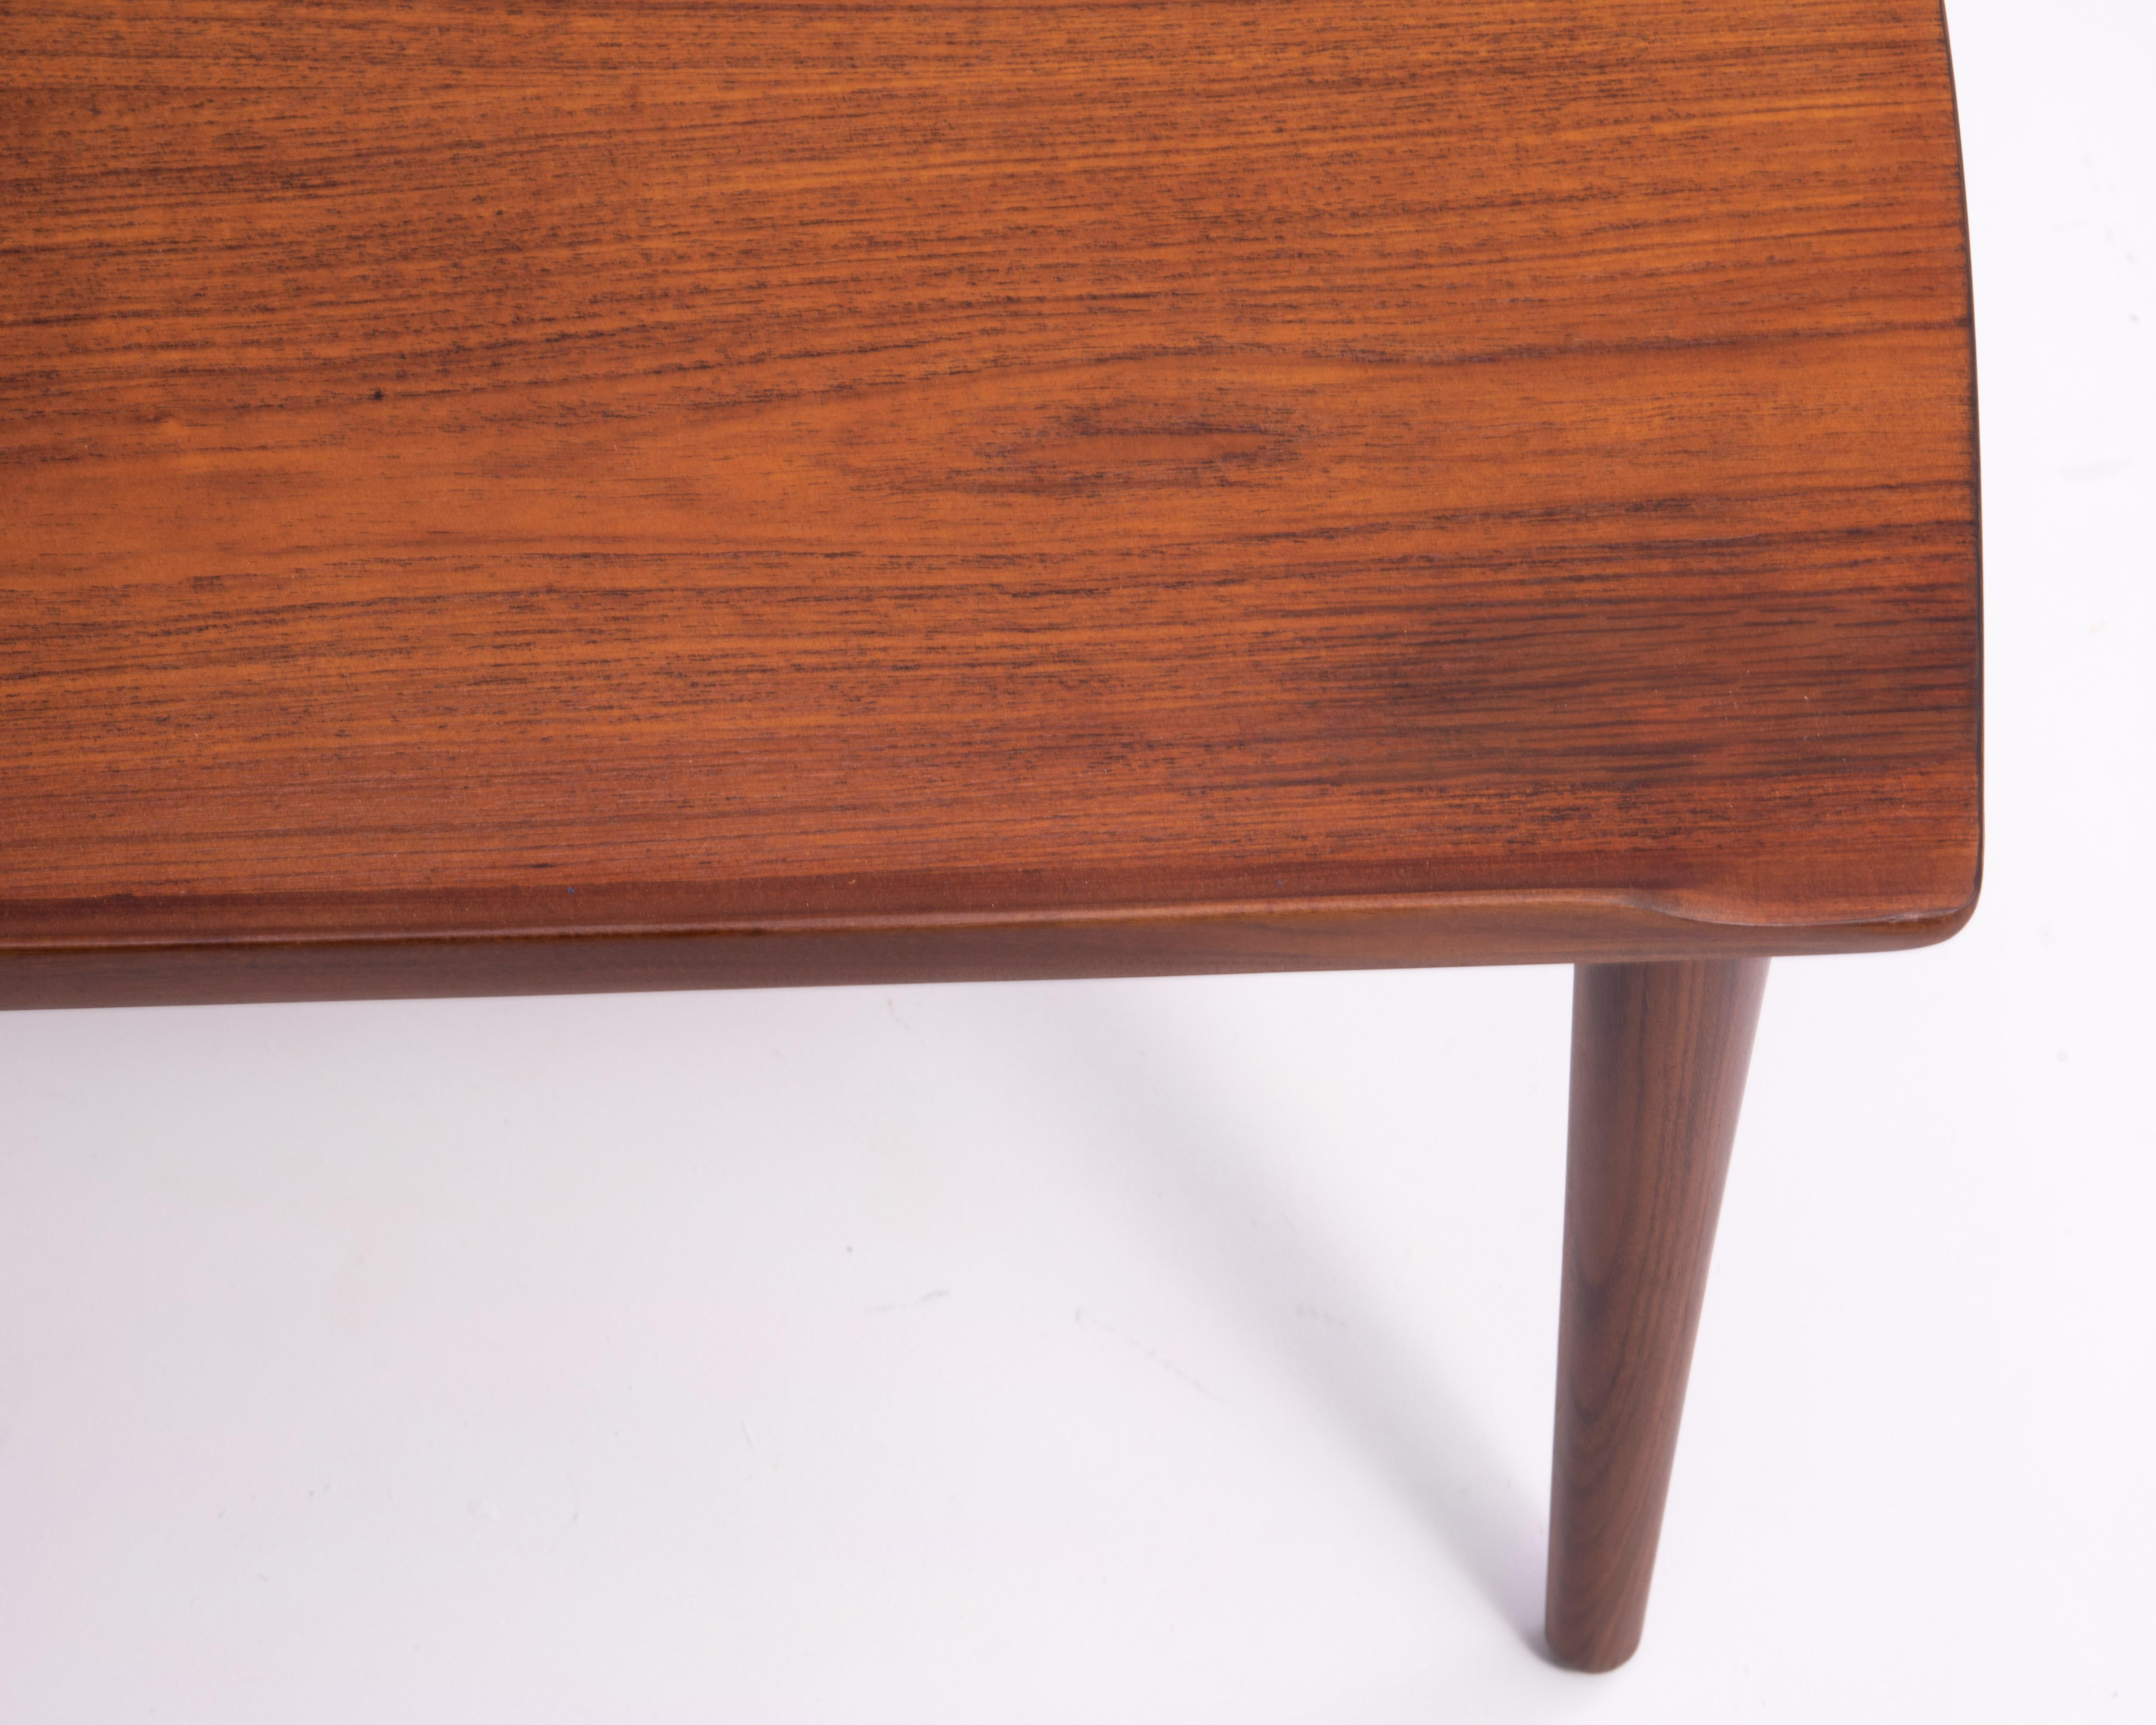 Danish Modern Teak Dowel Leg Side Table After Grete Jalk Marked B. J. 1970s For Sale 8